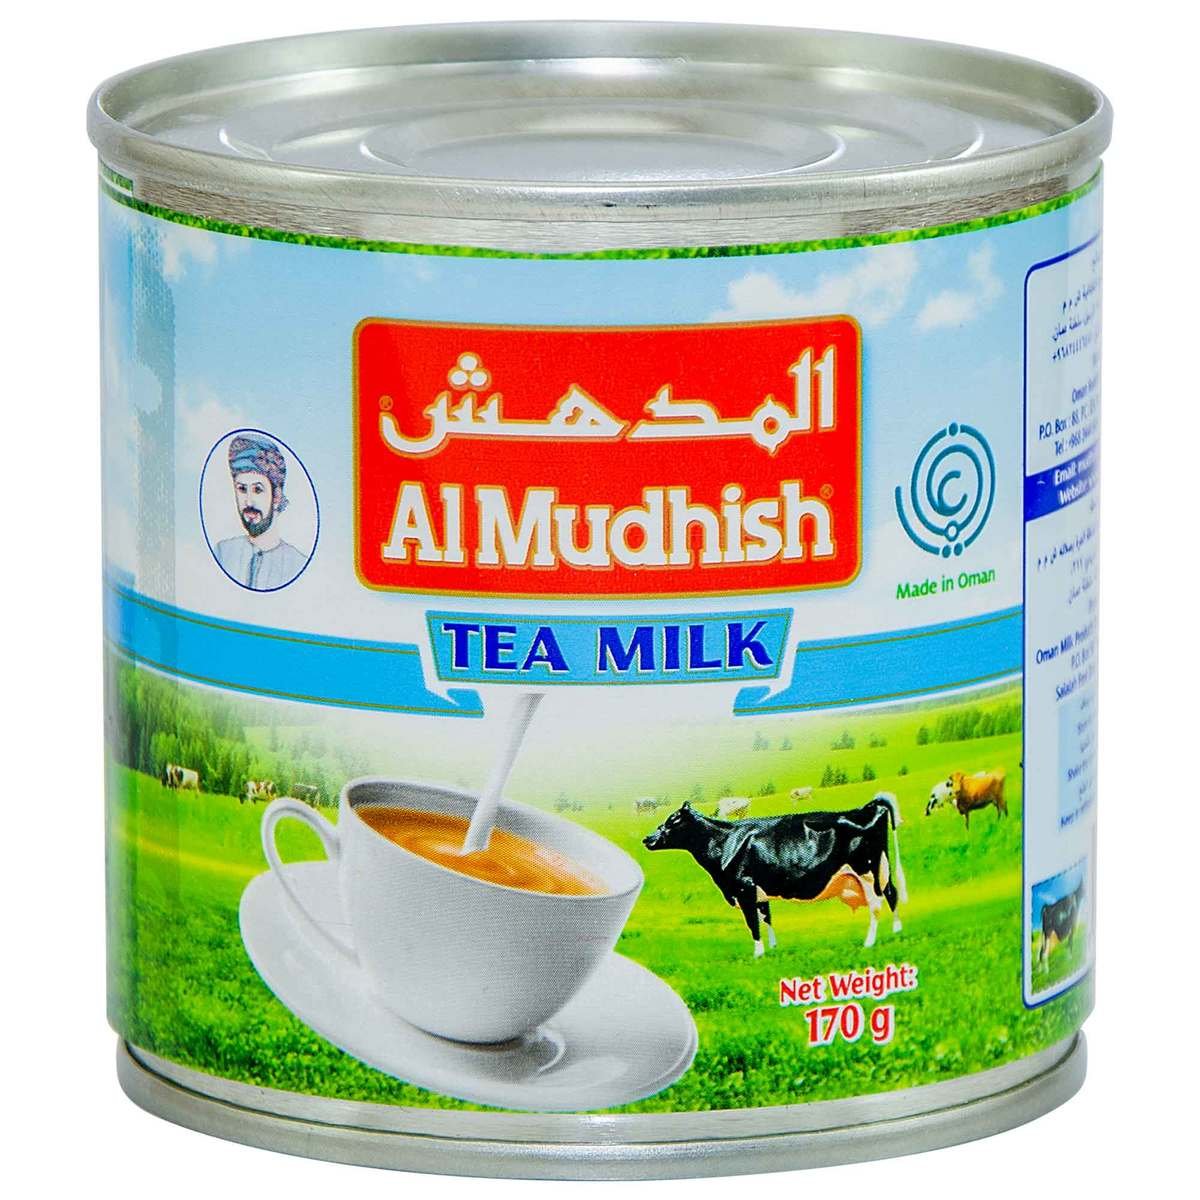 Al Mudhish Tea Milk 170g